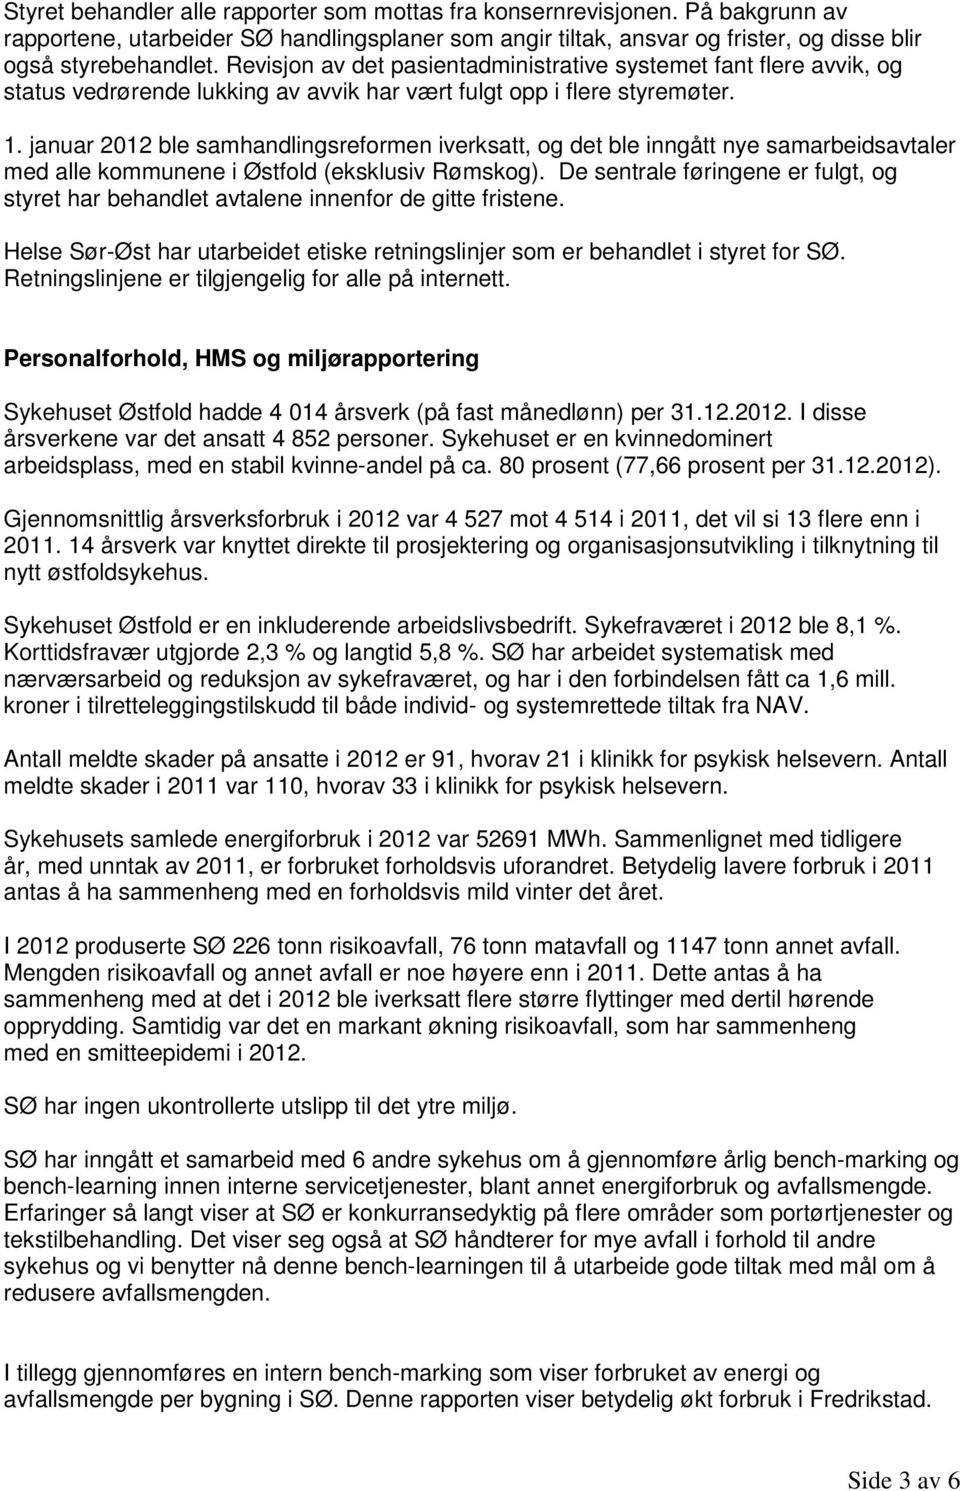 januar 2012 ble samhandlingsreformen iverksatt, og det ble inngått nye samarbeidsavtaler med alle kommunene i Østfold (eksklusiv Rømskog).